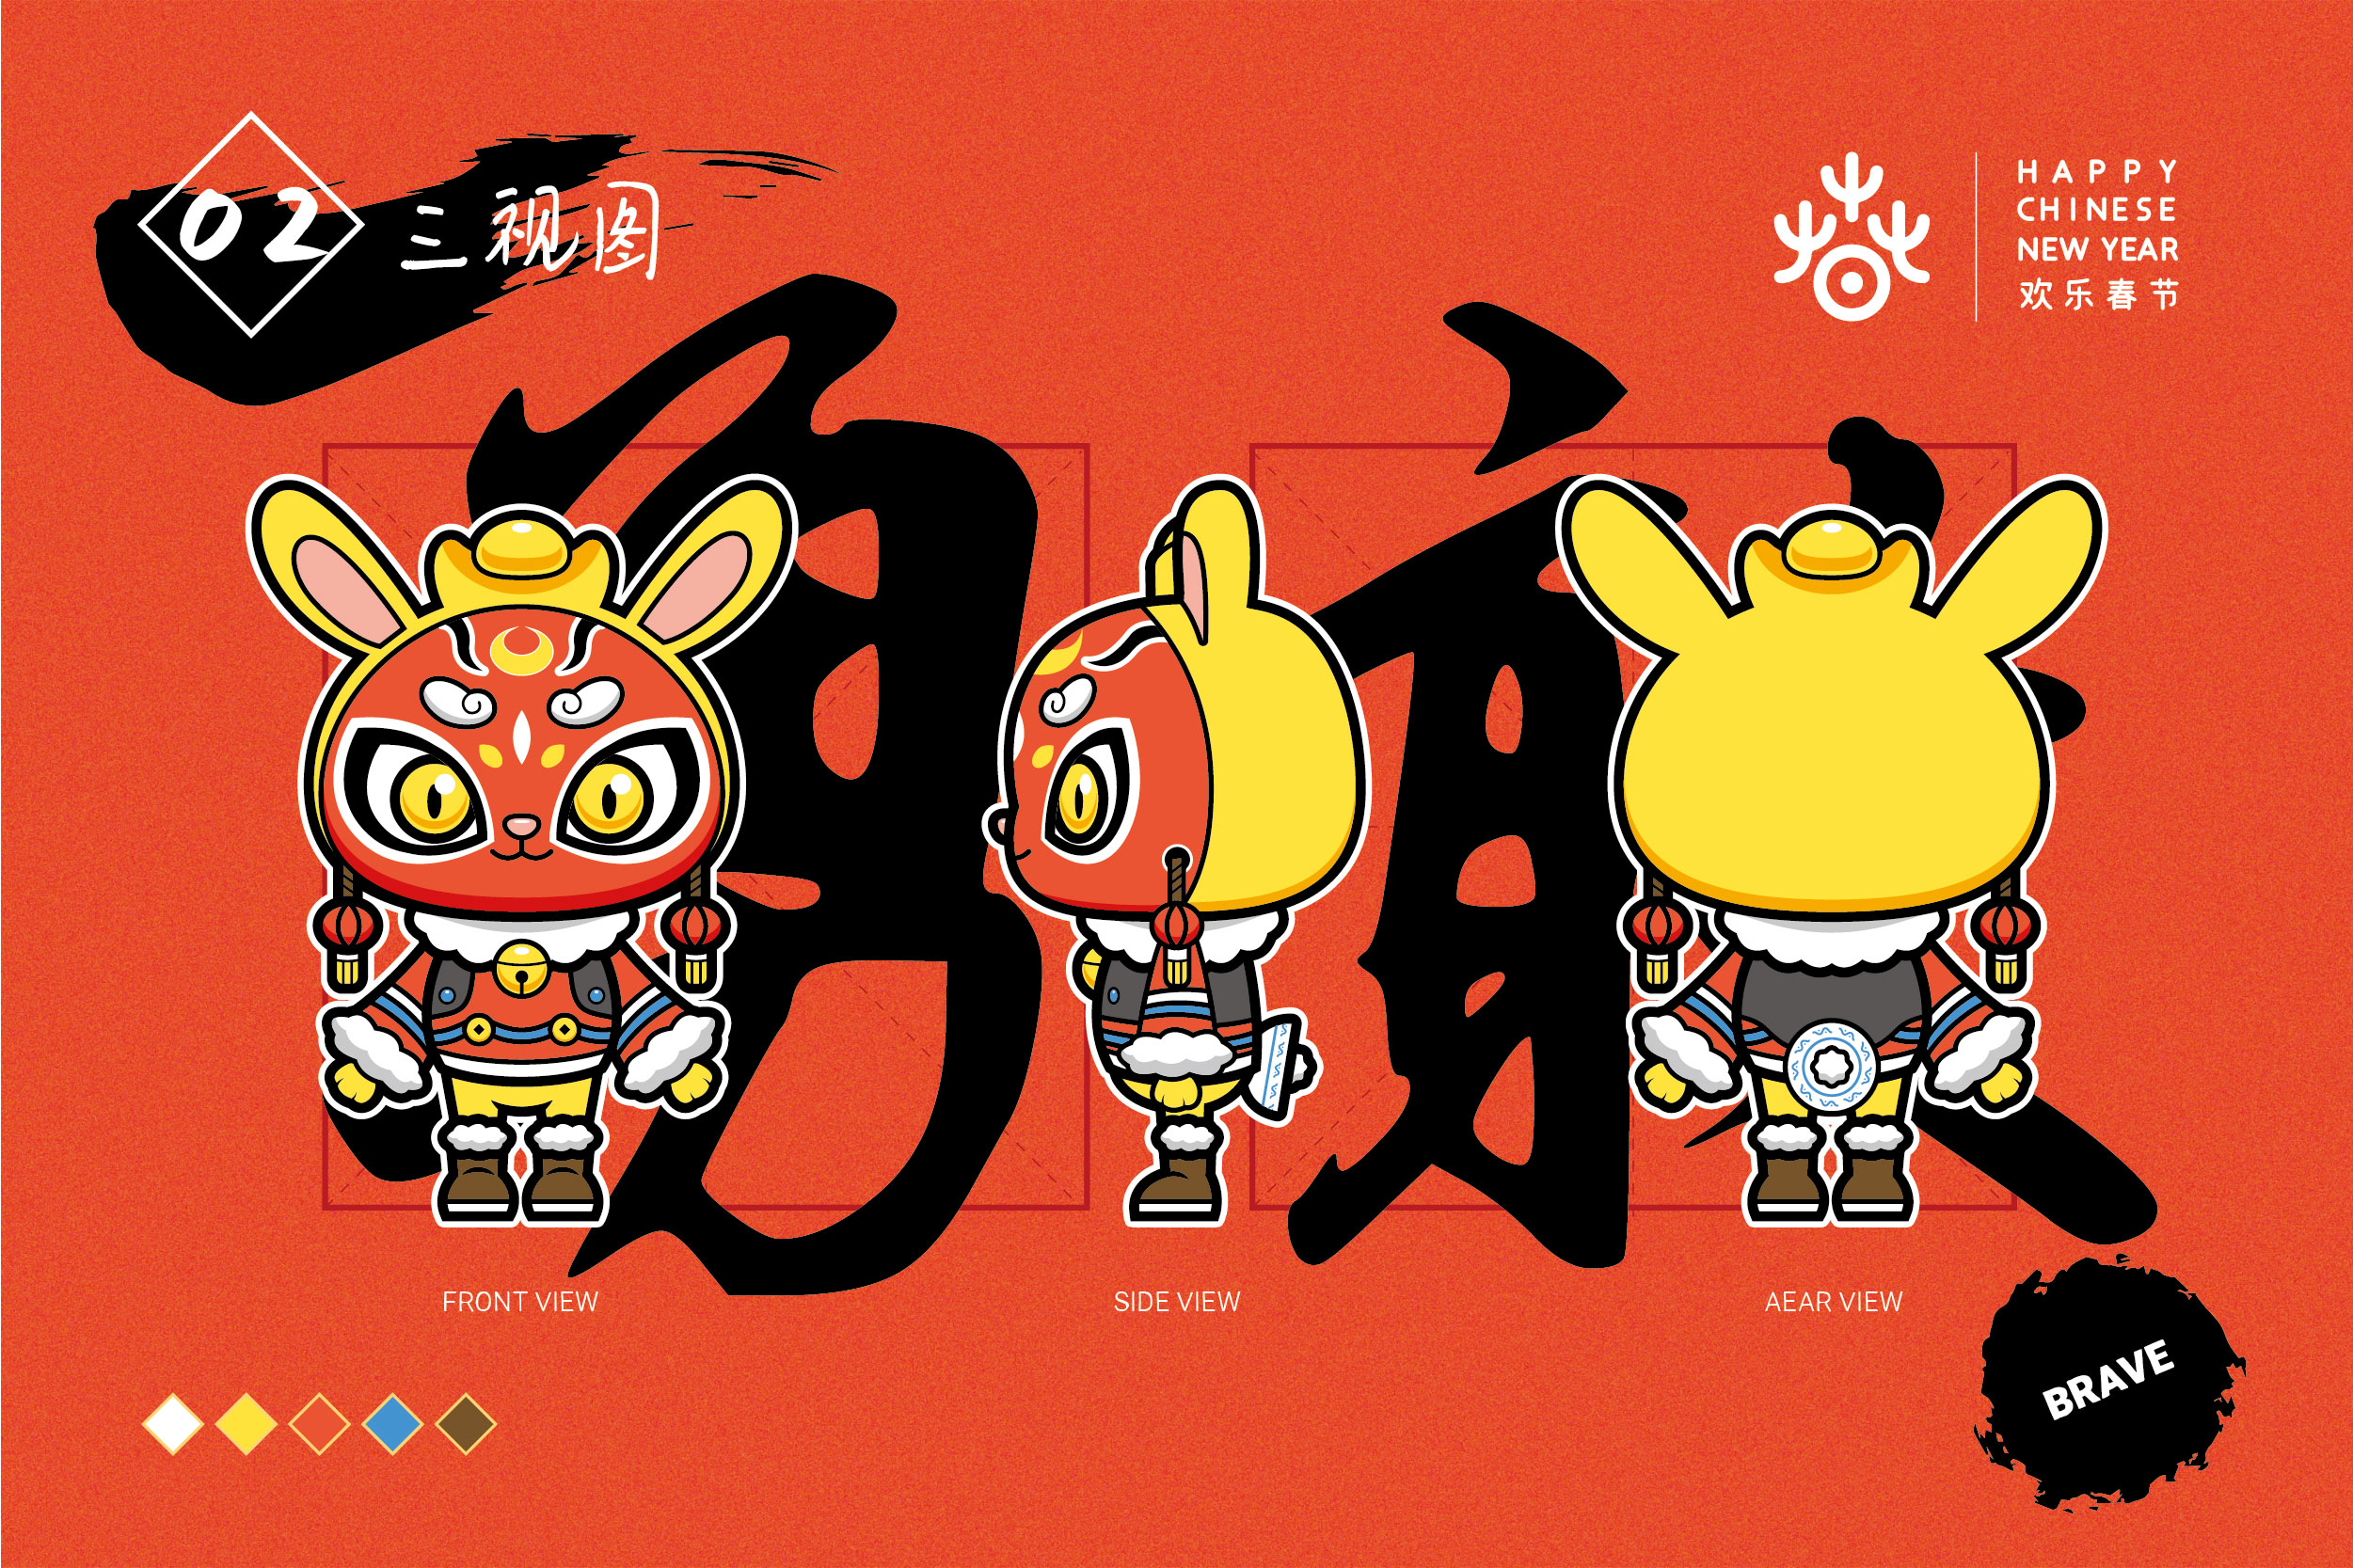 欢乐春节吉祥物设计全球征集活动参赛作品-瑞兔迎春